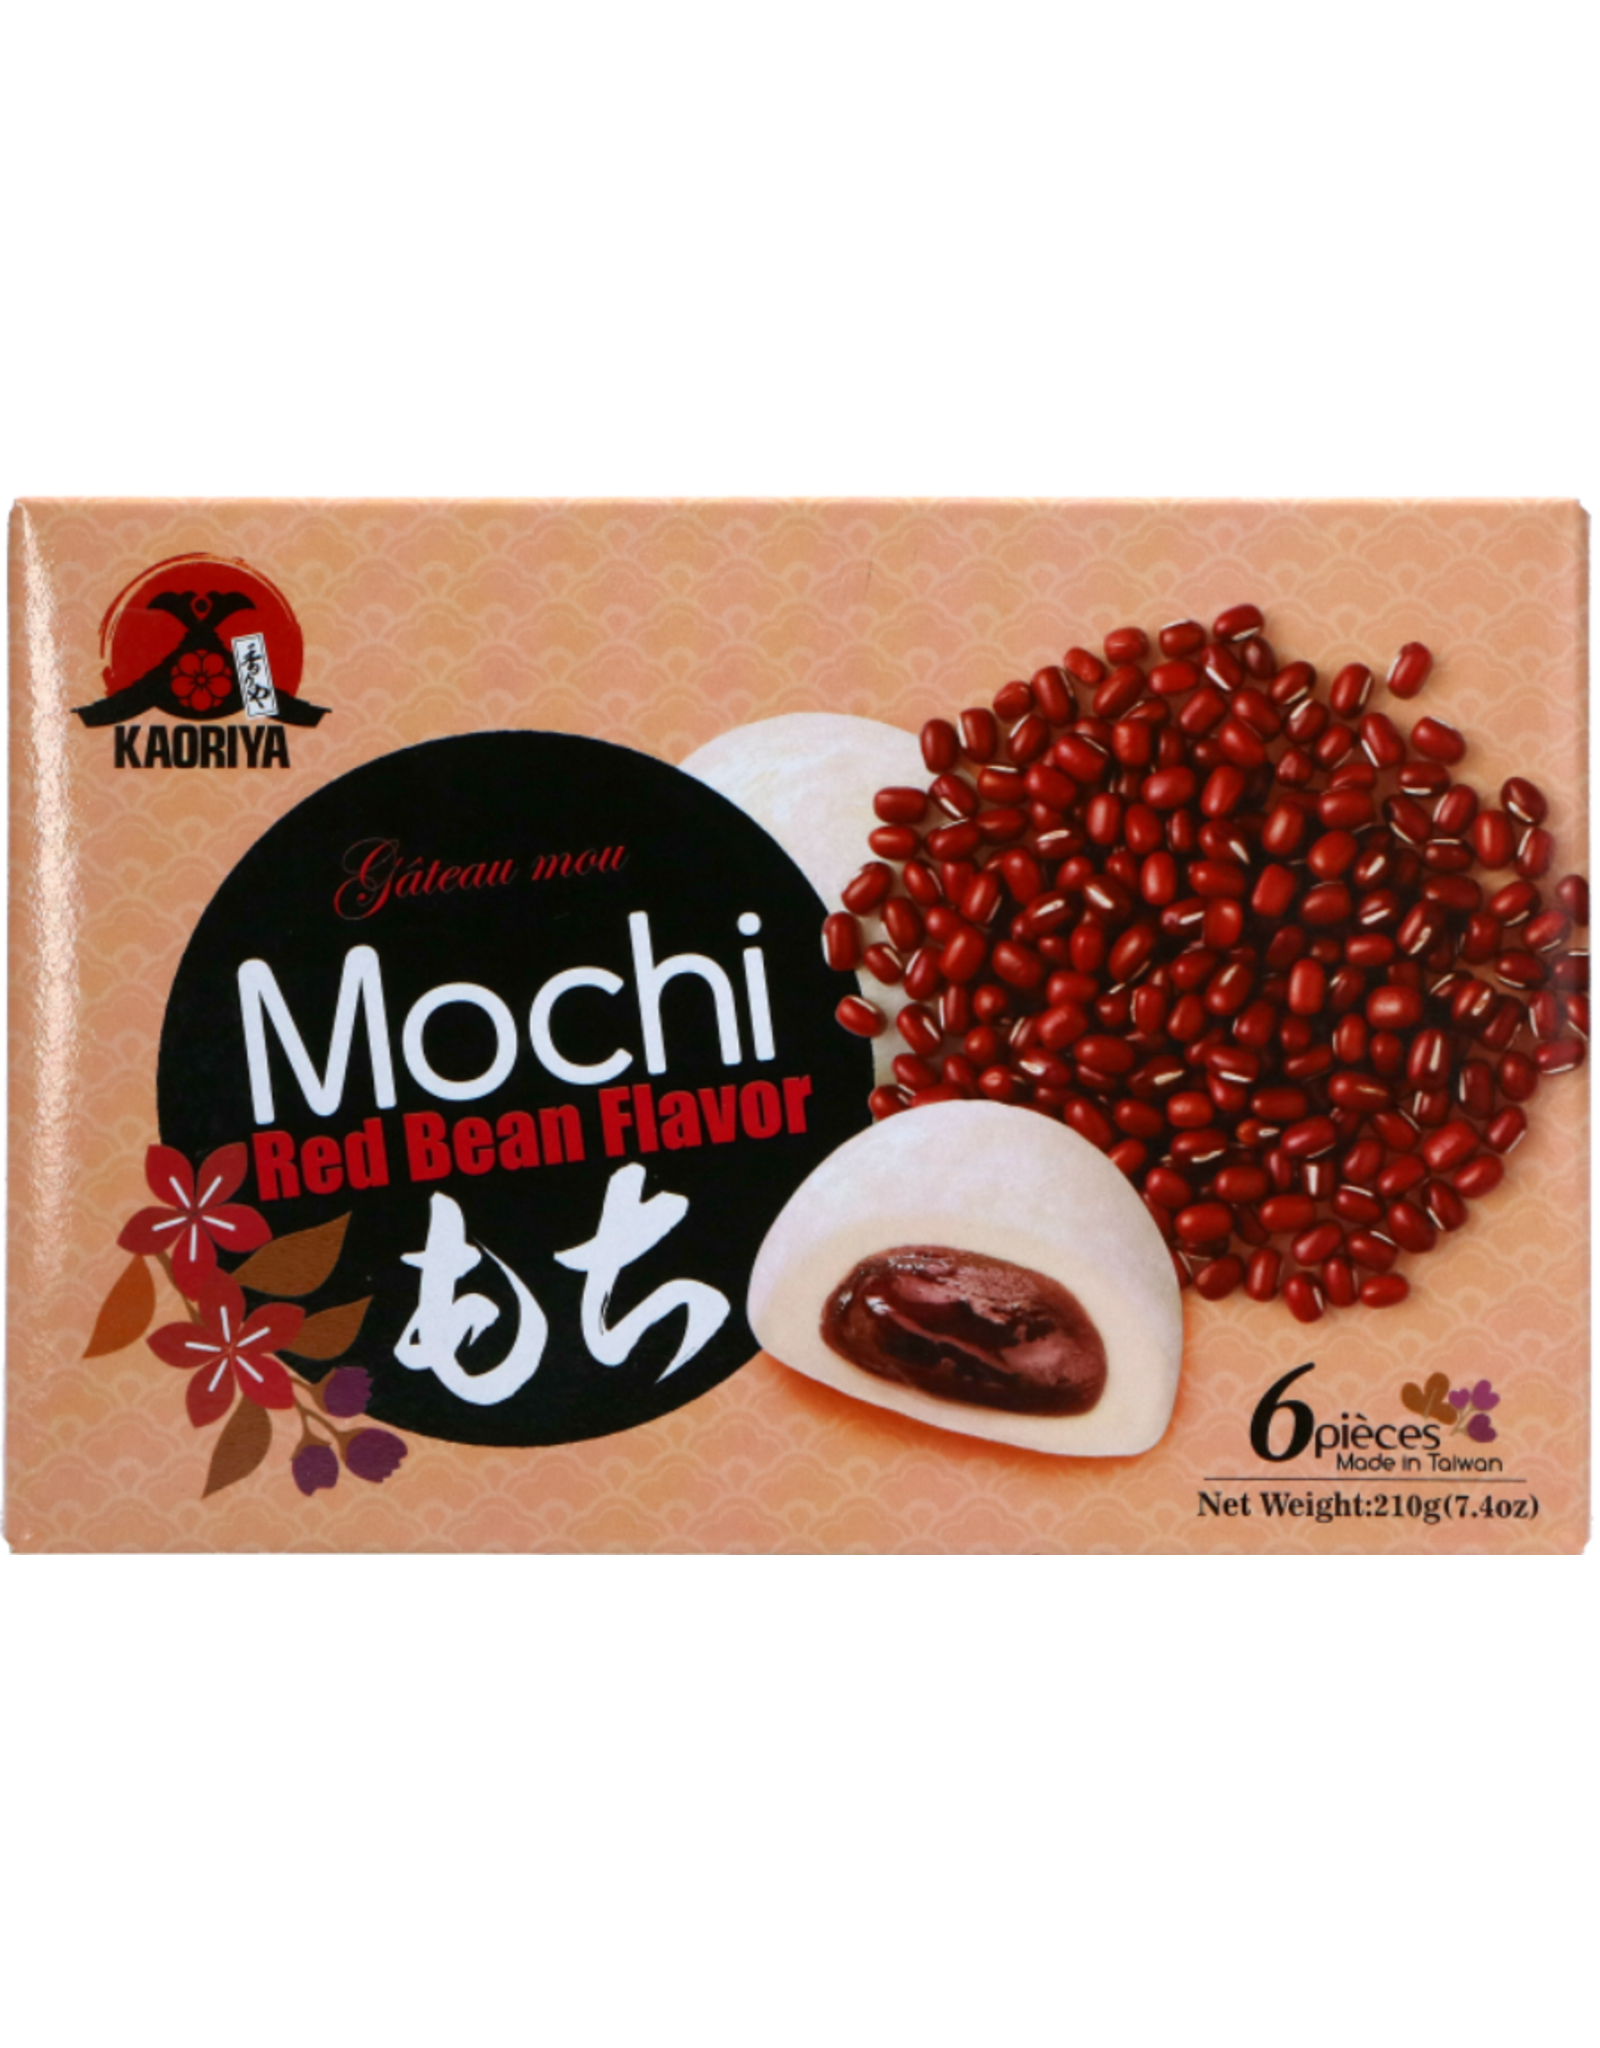 Kaoriya Red Bean Mochi 210g